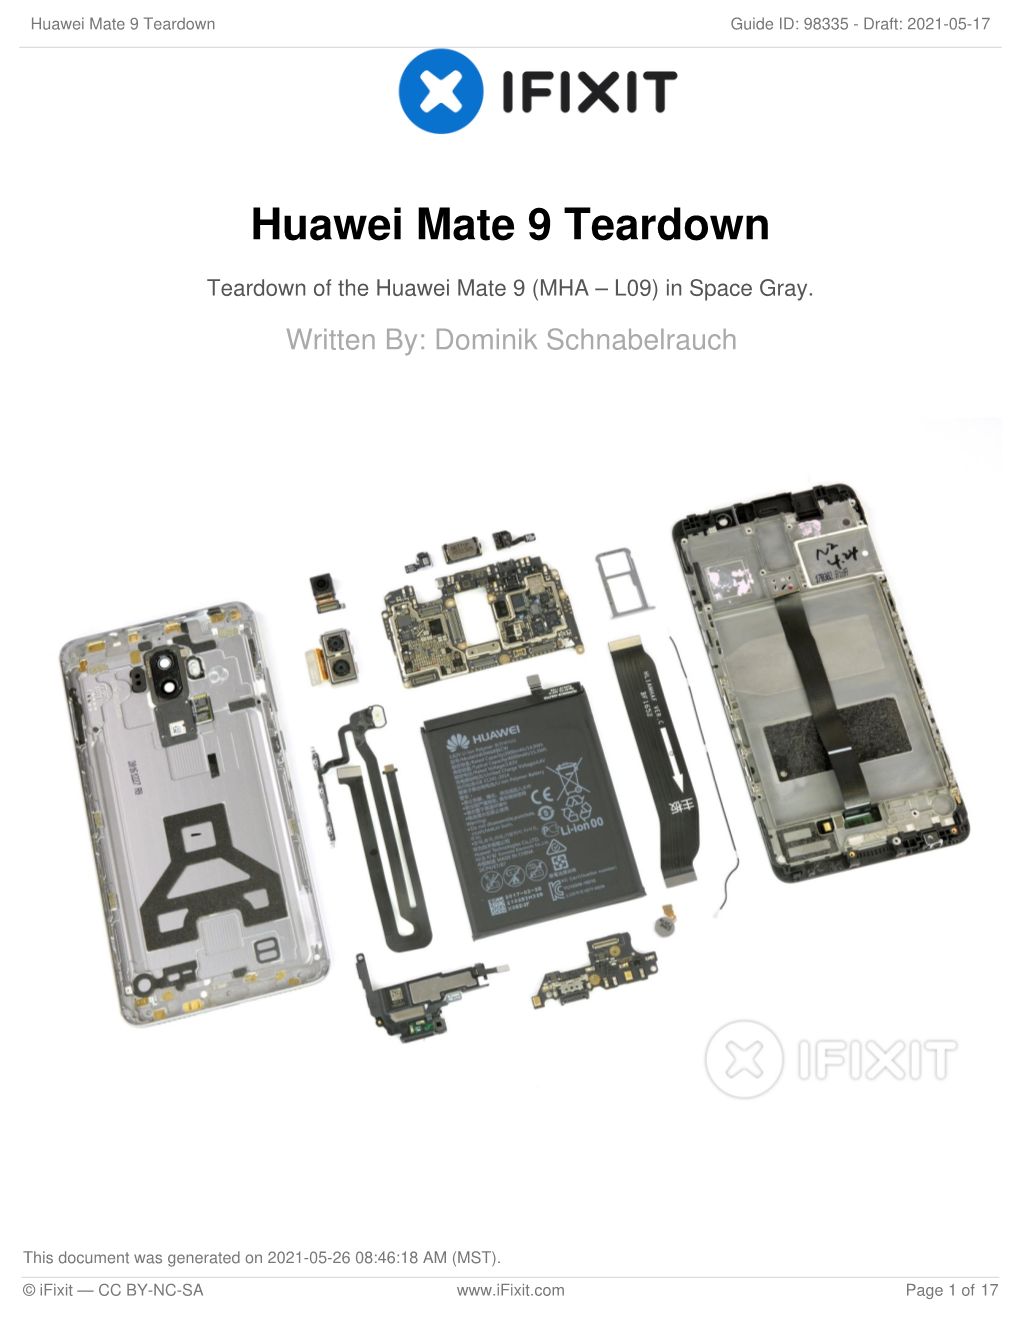 Huawei Mate 9 Teardown Guide ID: 98335 - Draft: 2021-05-17